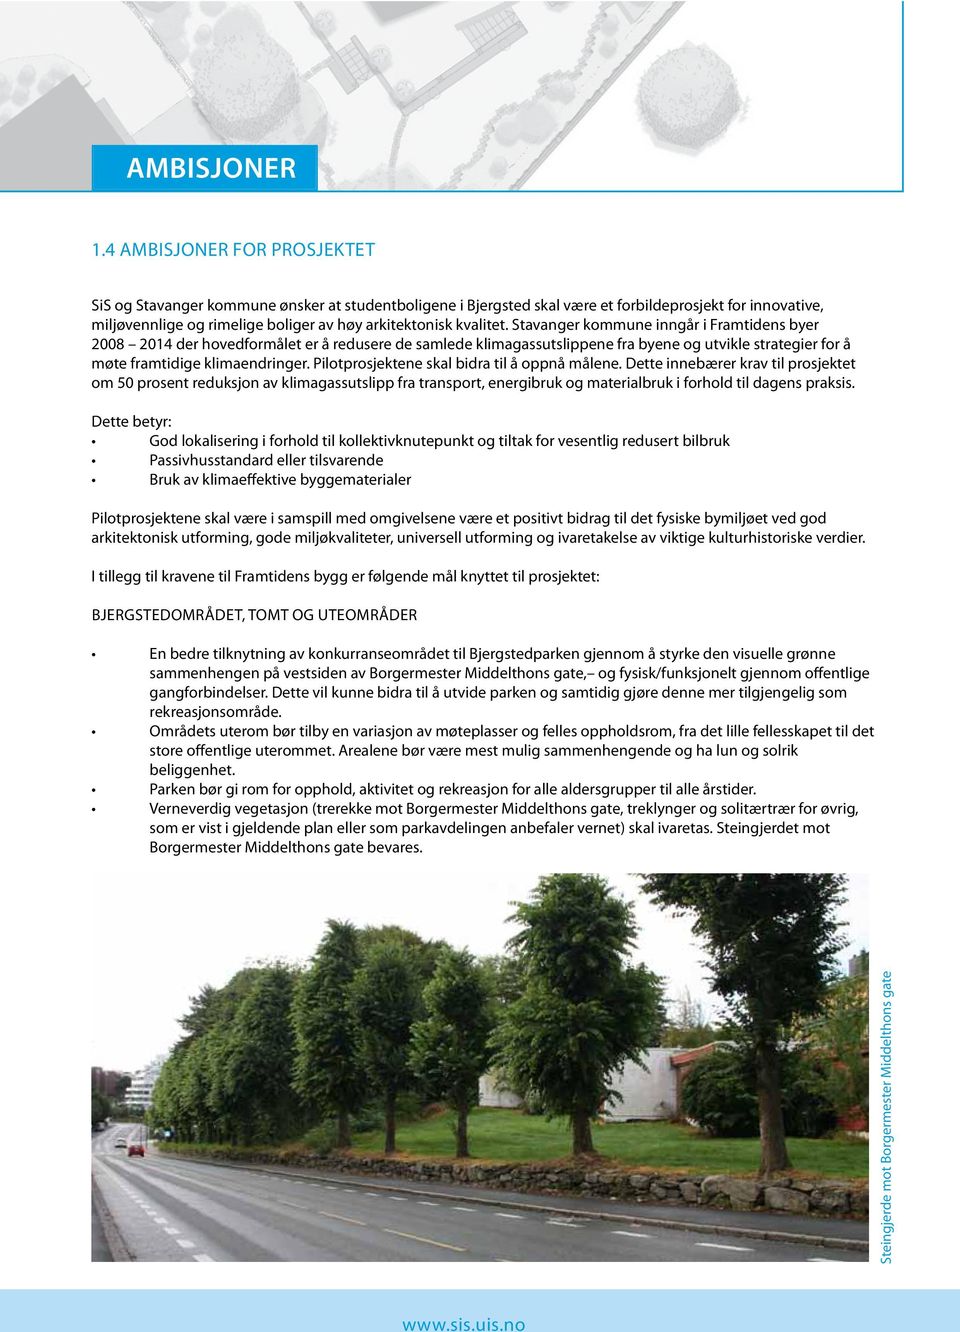 kvalitet. Stavanger kommune inngår i Framtidens byer 2008 2014 der hovedformålet er å redusere de samlede klimagassutslippene fra byene og utvikle strategier for å møte framtidige klimaendringer.